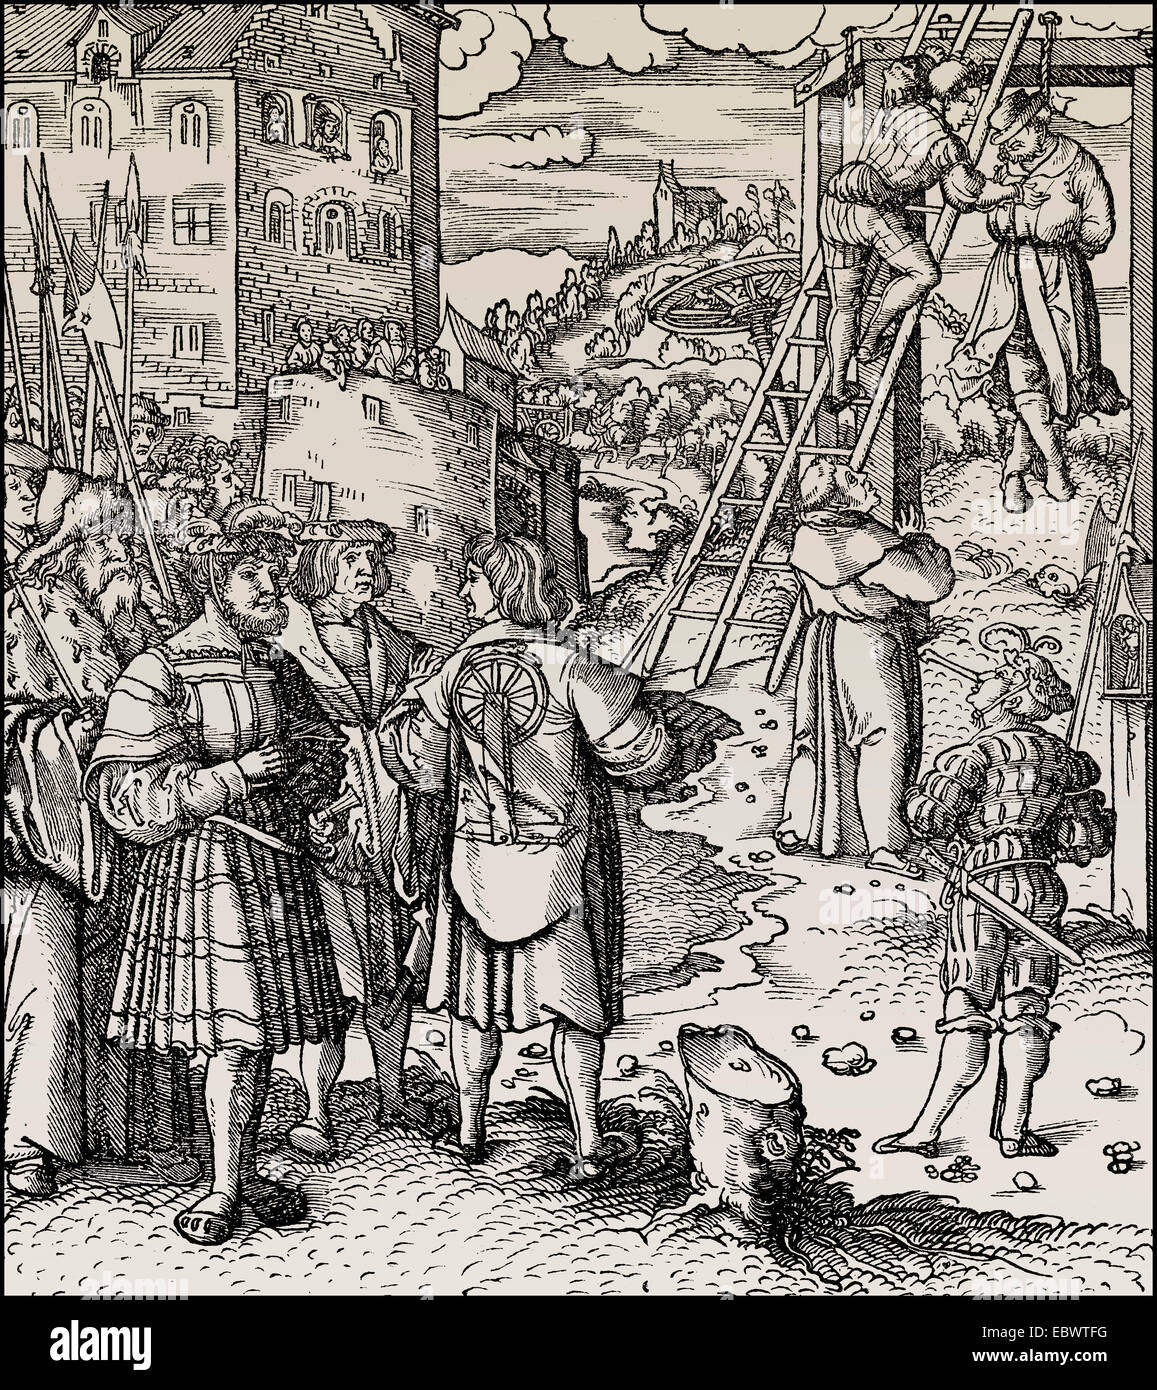 L'exécution publique par pendaison, 15e siècle, öffentliche Hinrichtungen im 15. Jahrhundert Banque D'Images